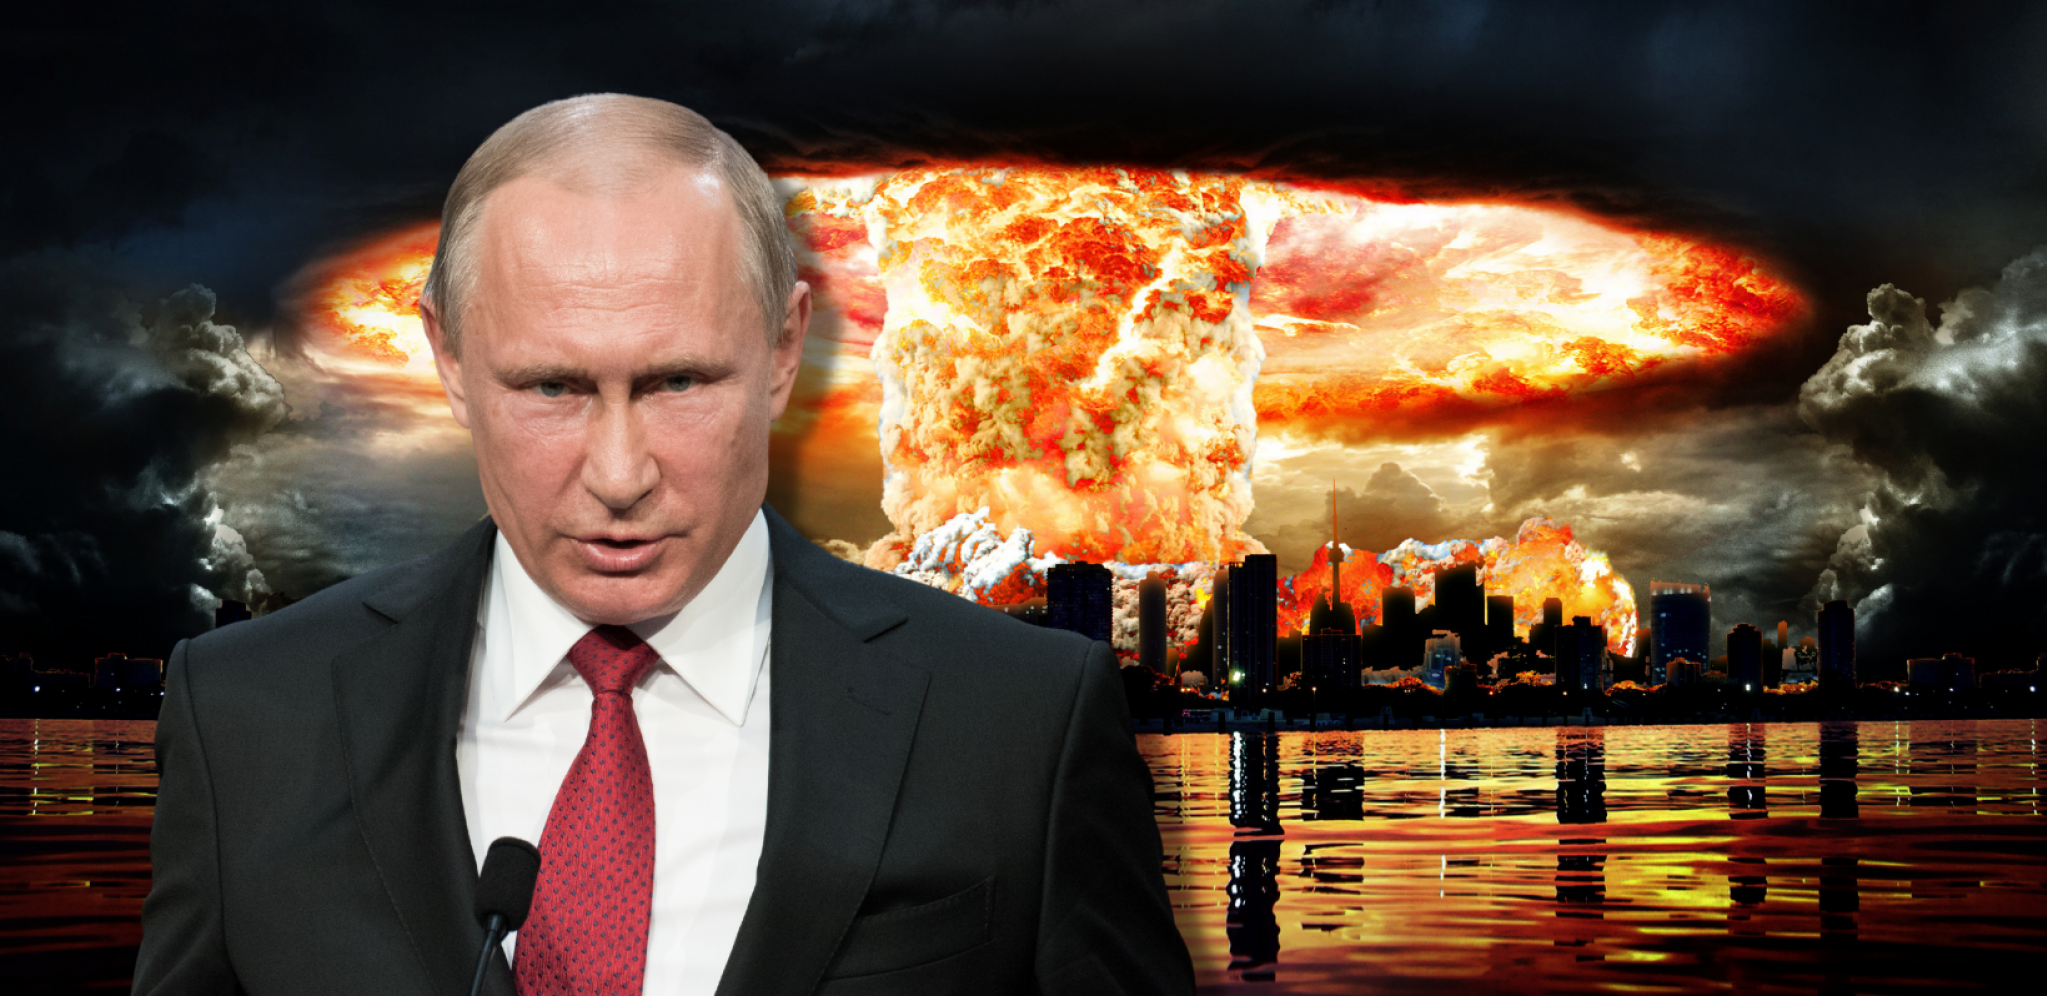 SIGNAL STRAHA I SMRTI Kako bi izgledao Putinov nuklearni udar po Americi?